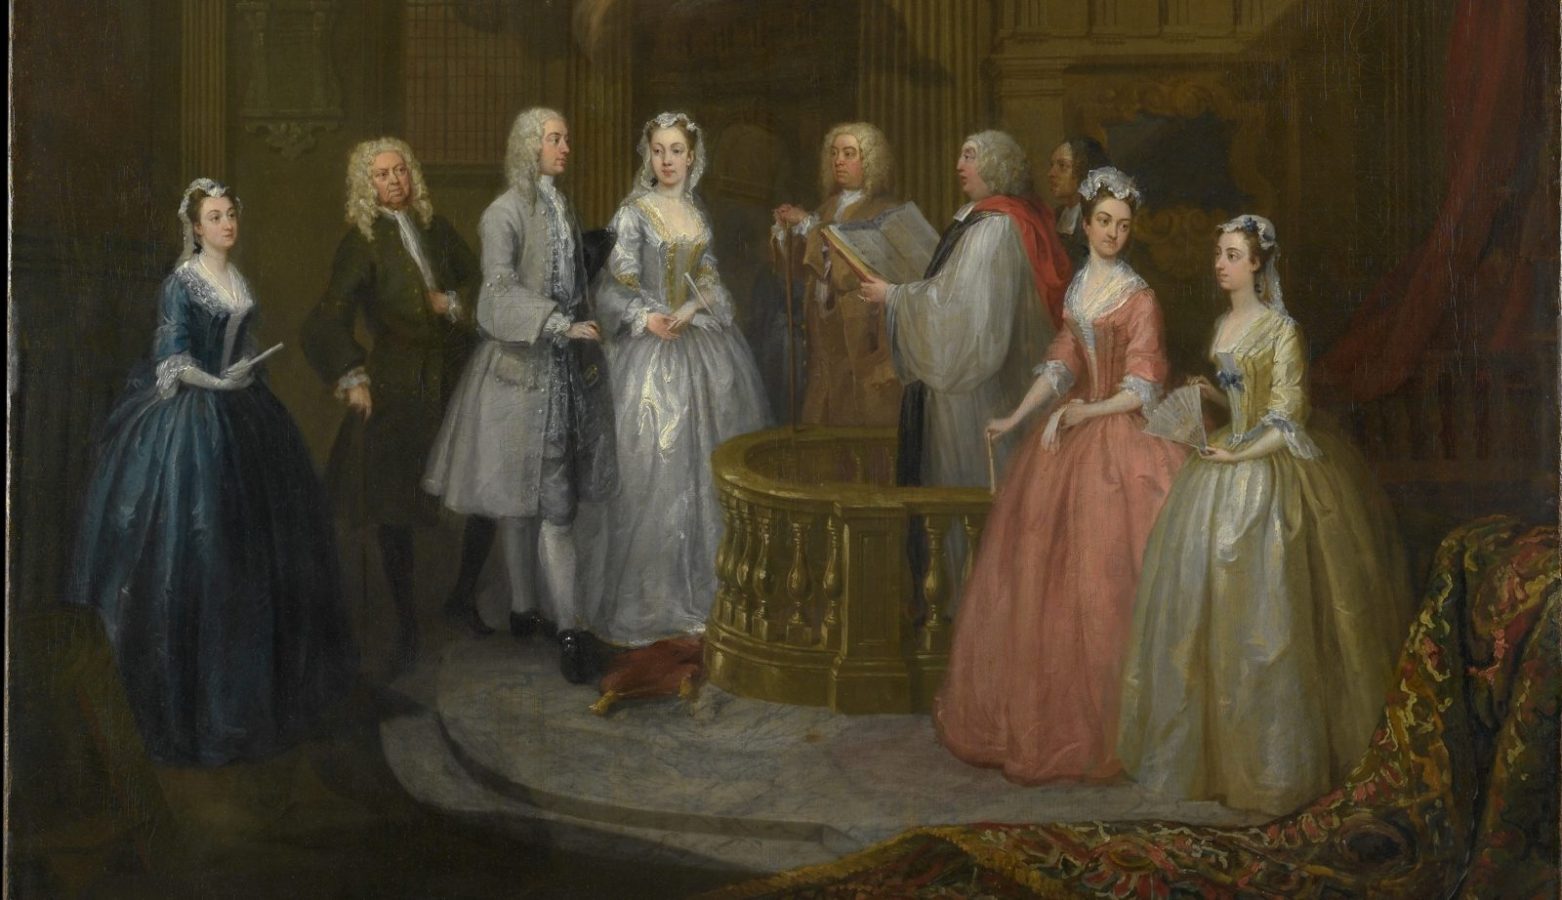 Дворянство европы. Эпоха Регентства Англия 18в. Elizabethan era Шекспир. Уильям Хогарт свадебный бал. Бракосочетание в Англии 18 века.